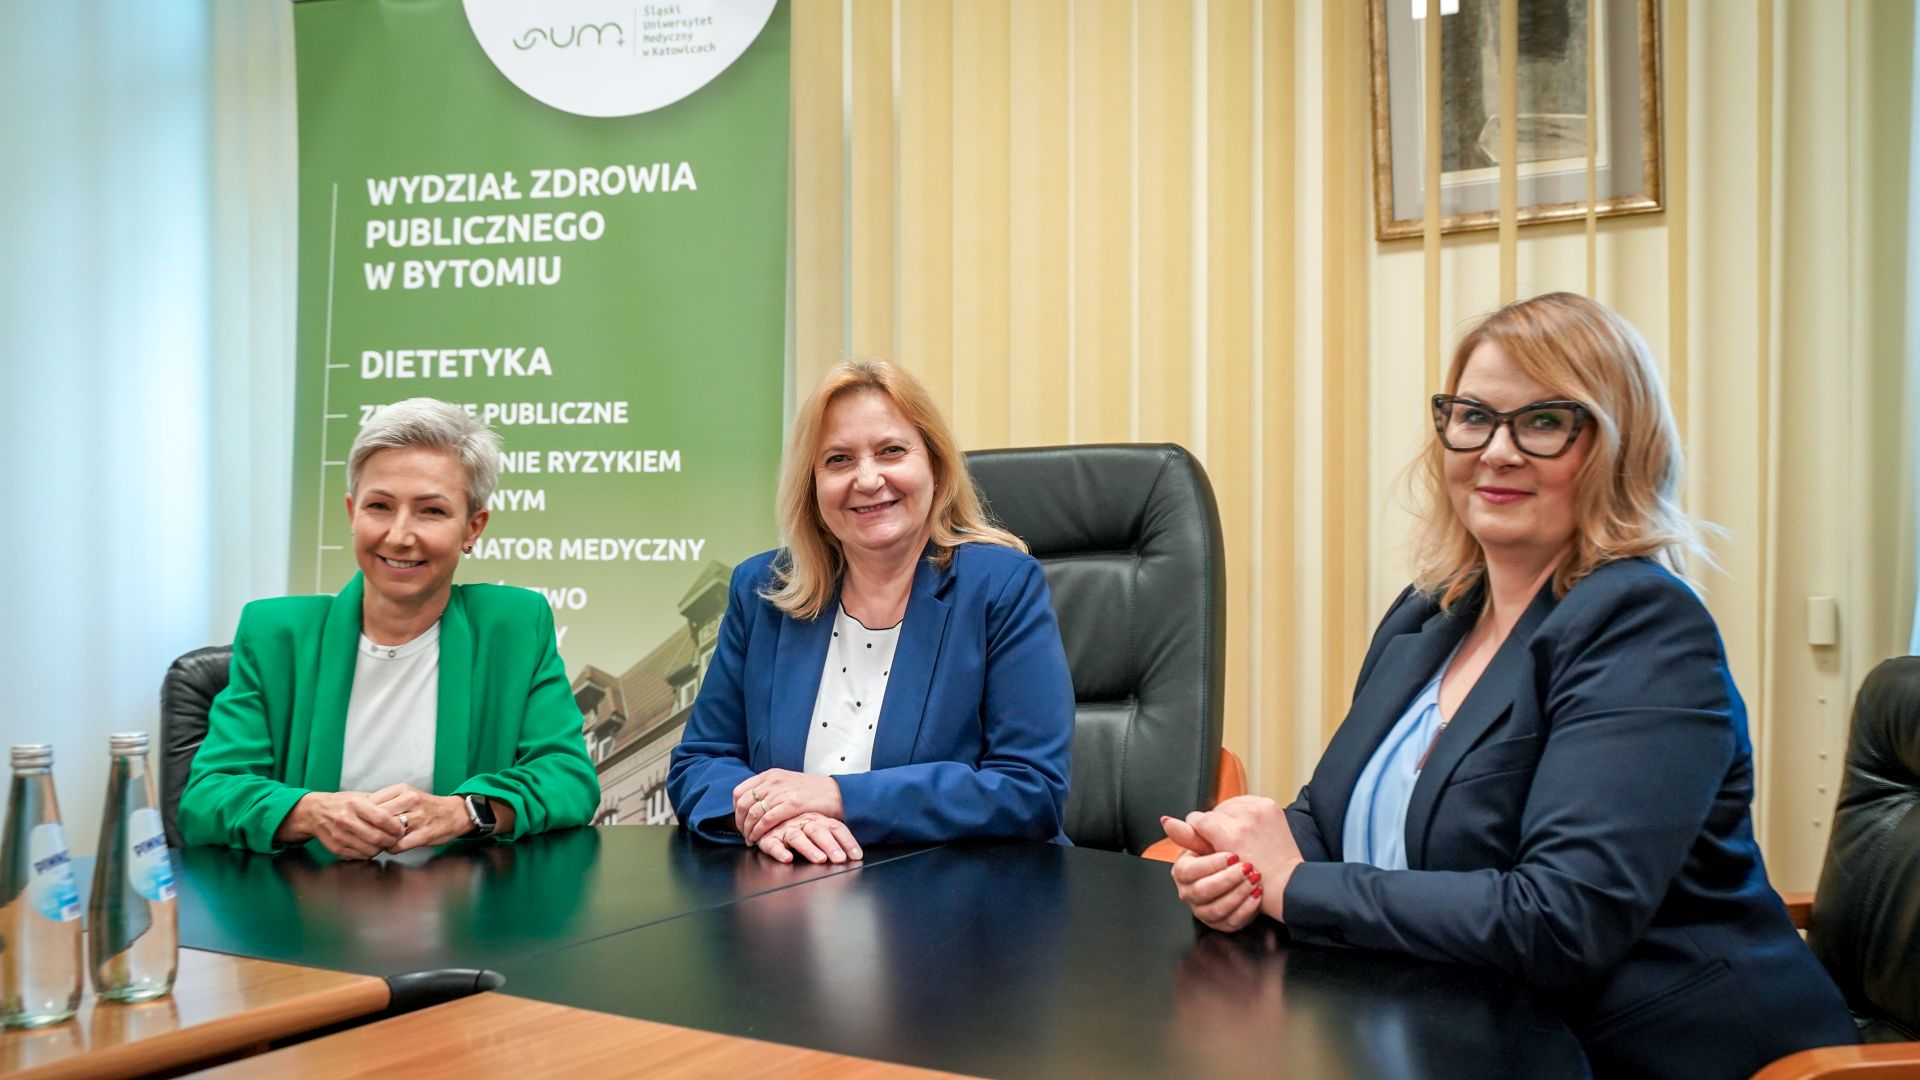 Aleksnadra Pol, Tatiana Lewicka, Agnieszka Białek-Dratwa